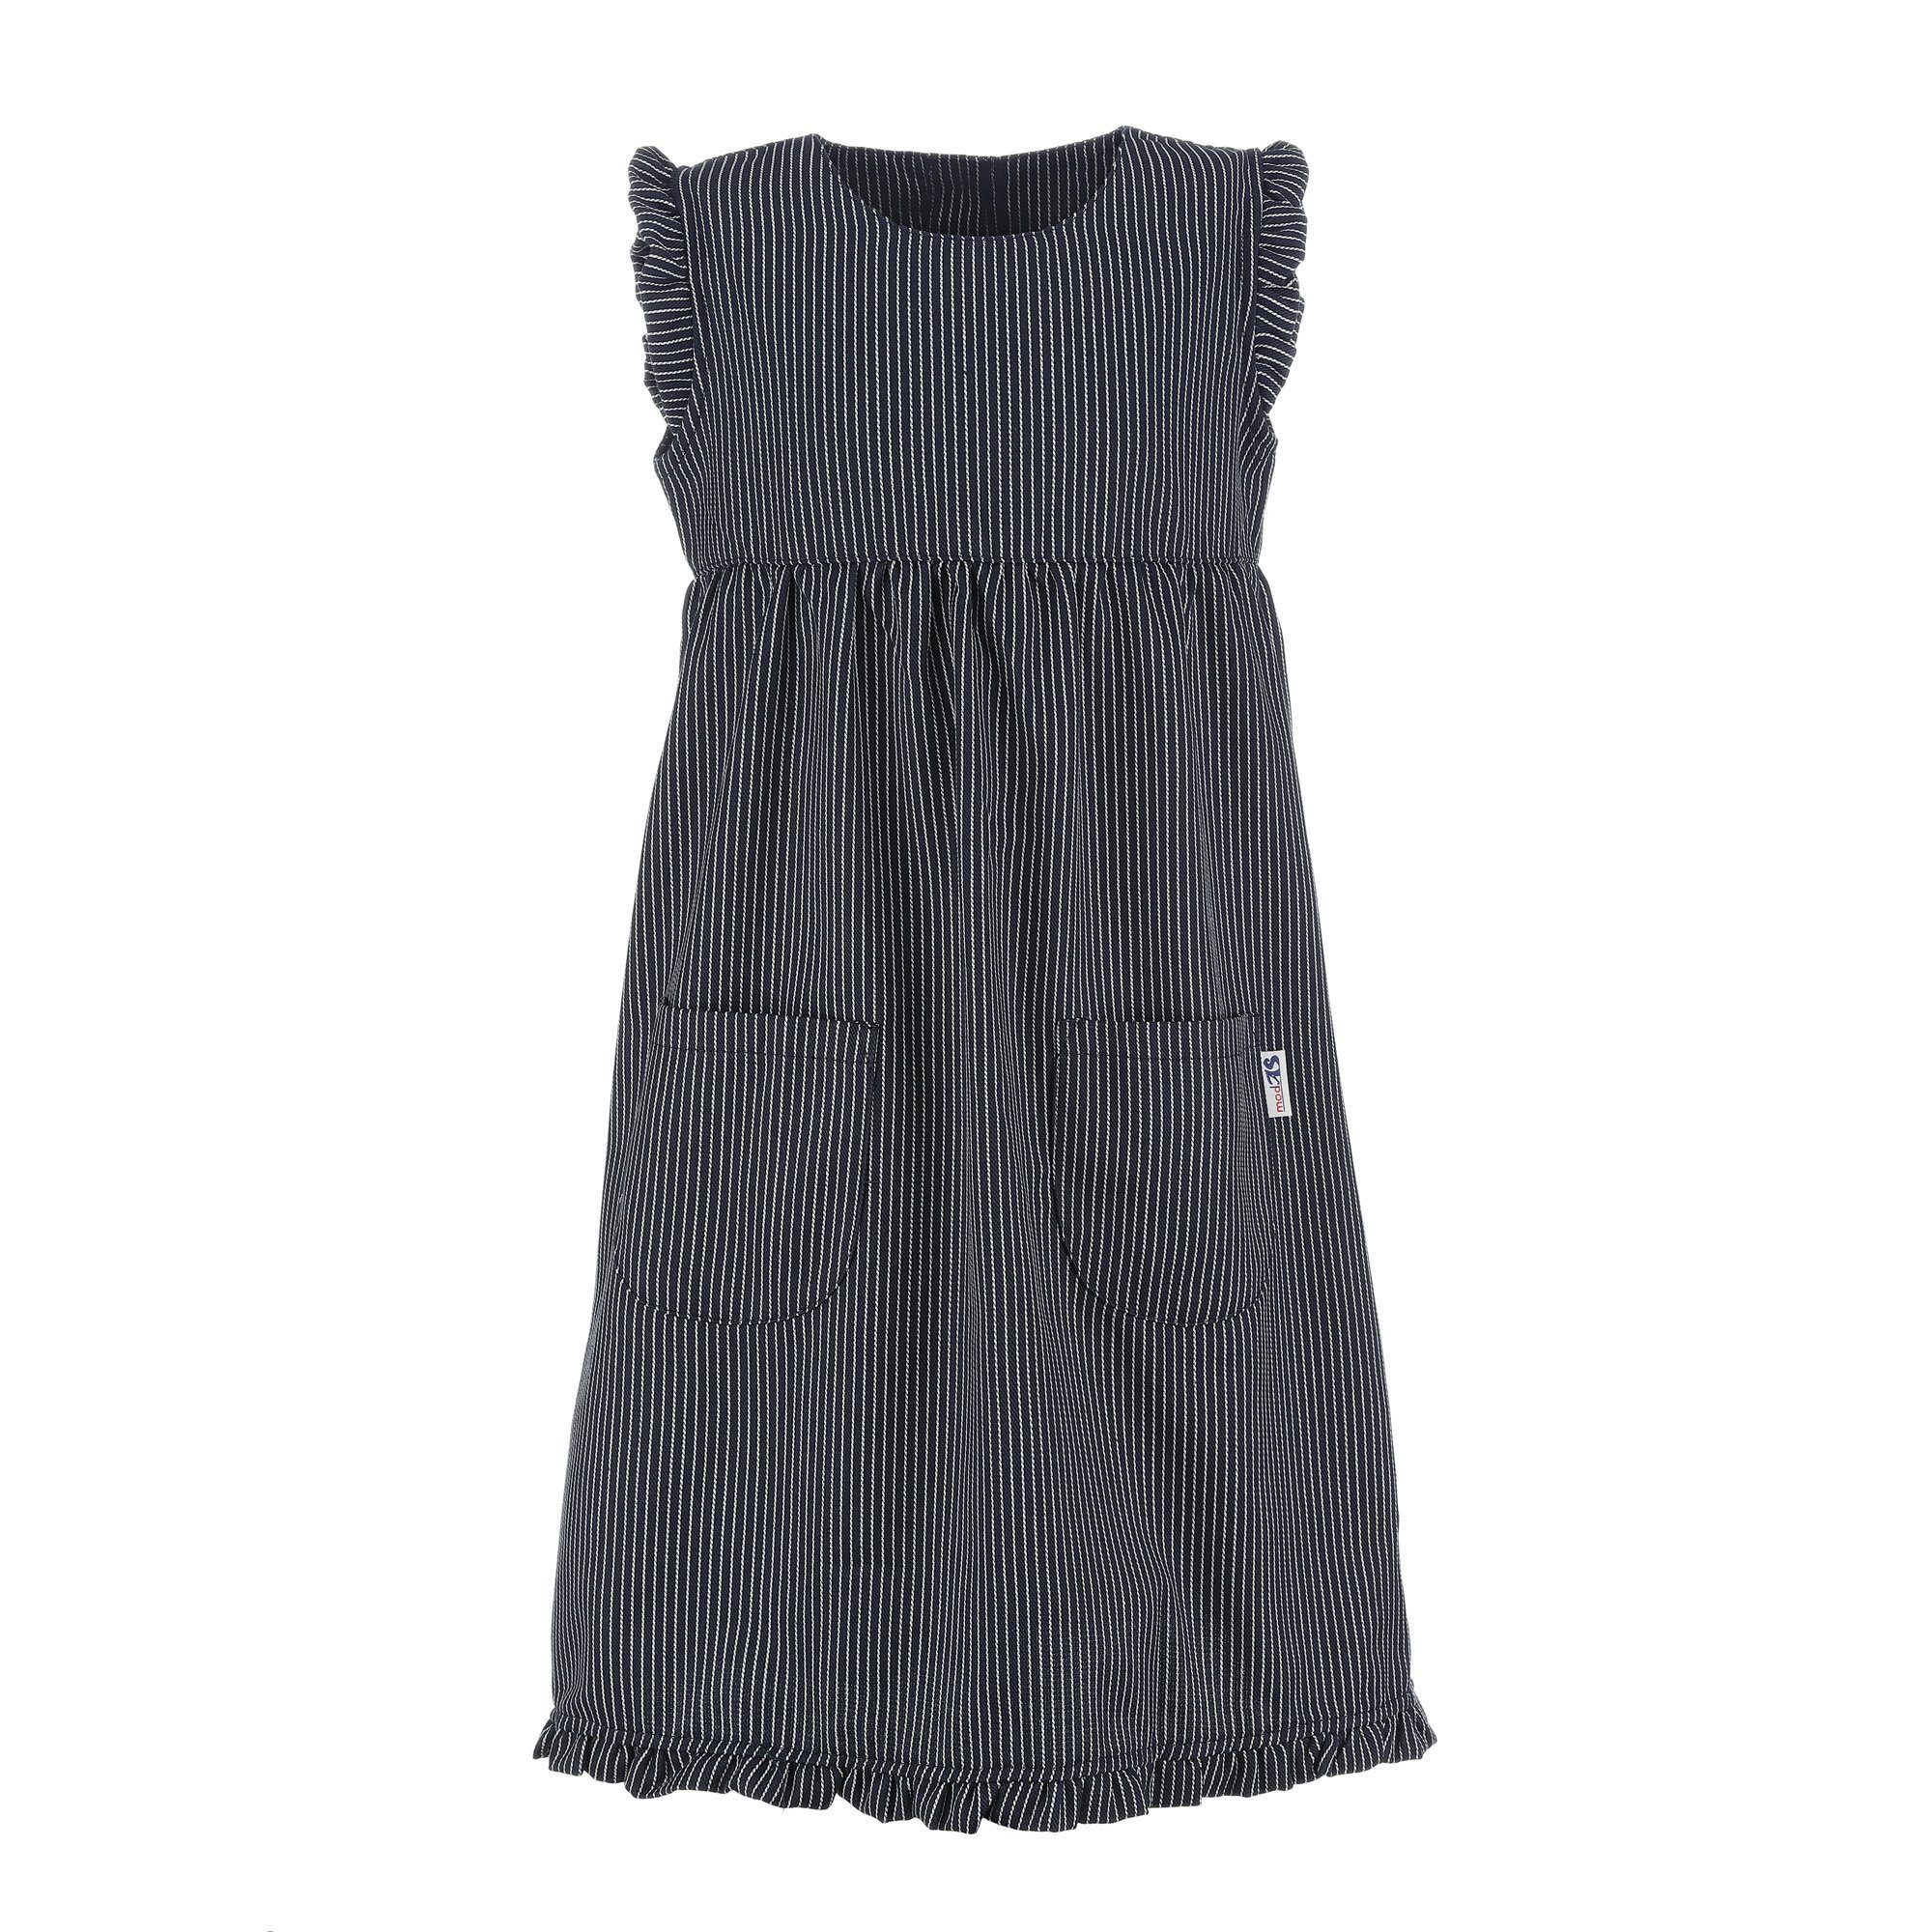 Strandkleid Mädchen Streifenkleid - Streifen Fischerkleid Streifen Kinder modAS Maritim Blau (10) breiter für